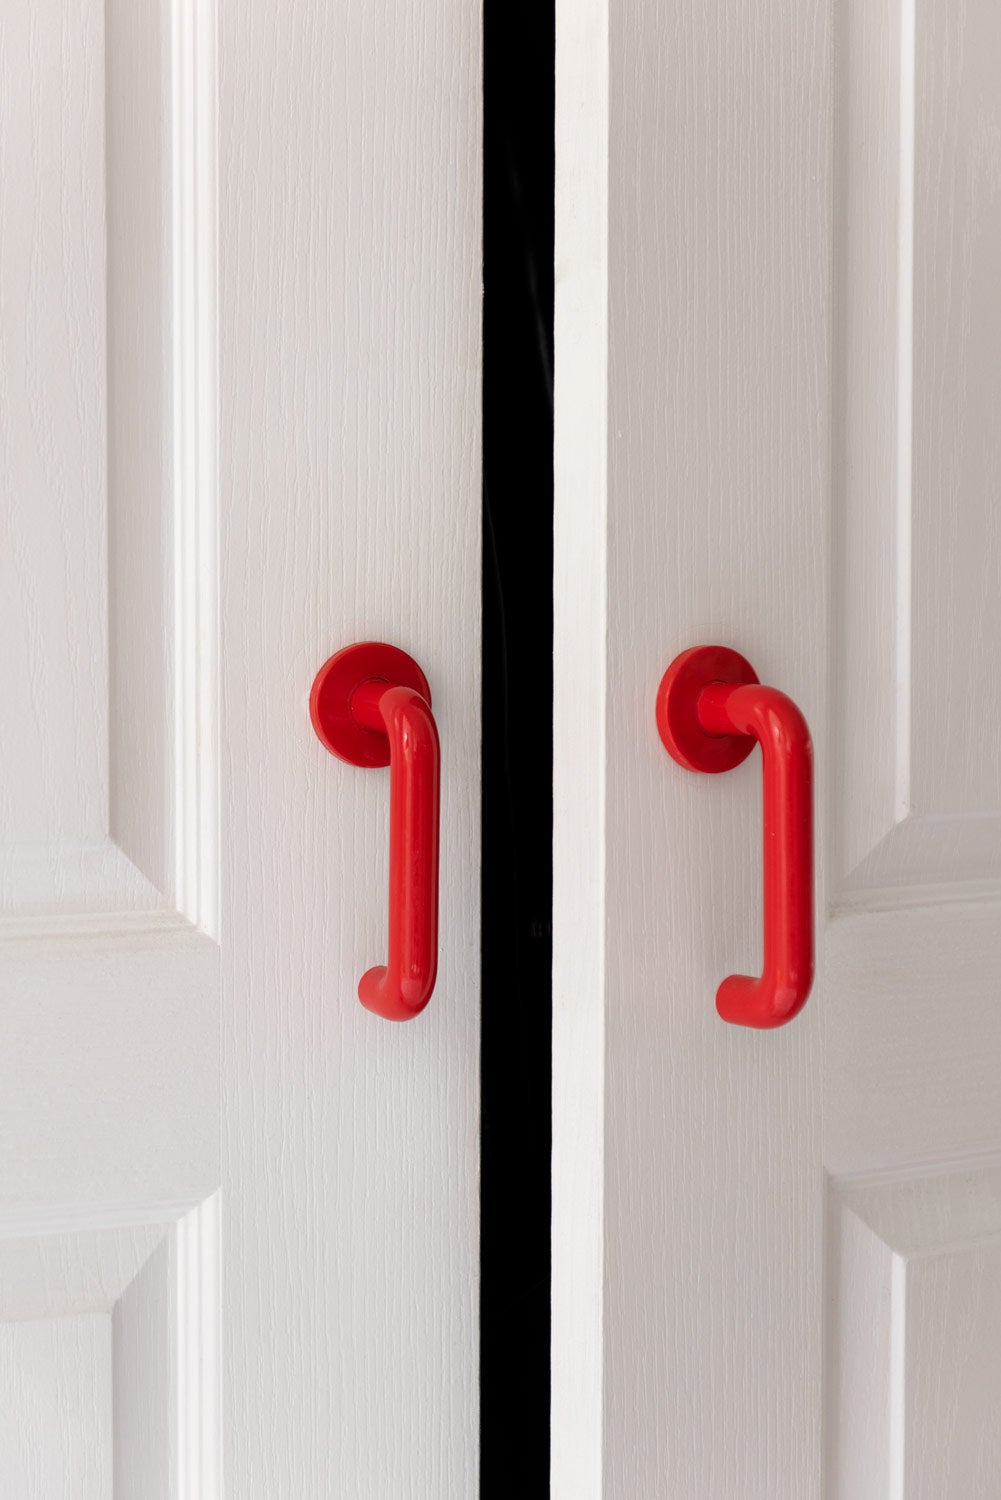 Red door handles on white door